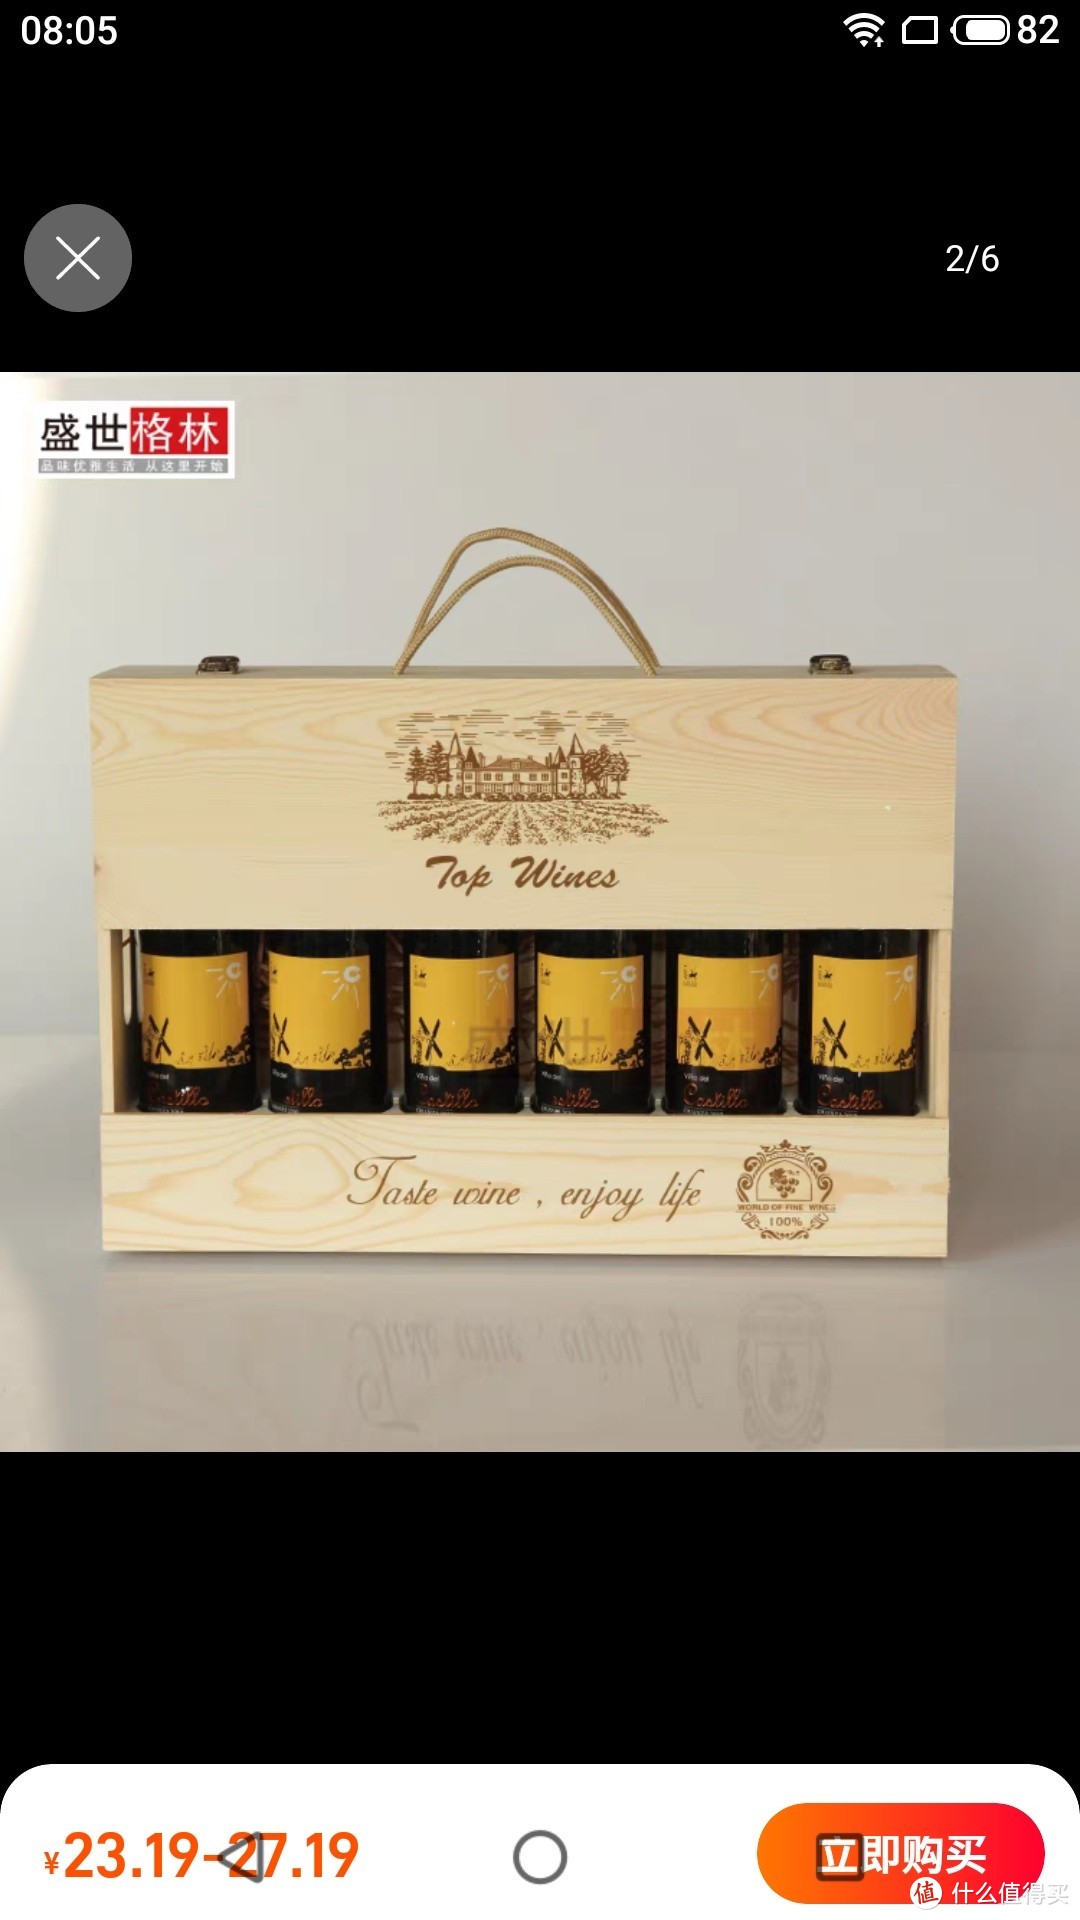 红酒木箱六支装6支装红酒木盒定做制6只红酒包装箱松木实木礼盒子